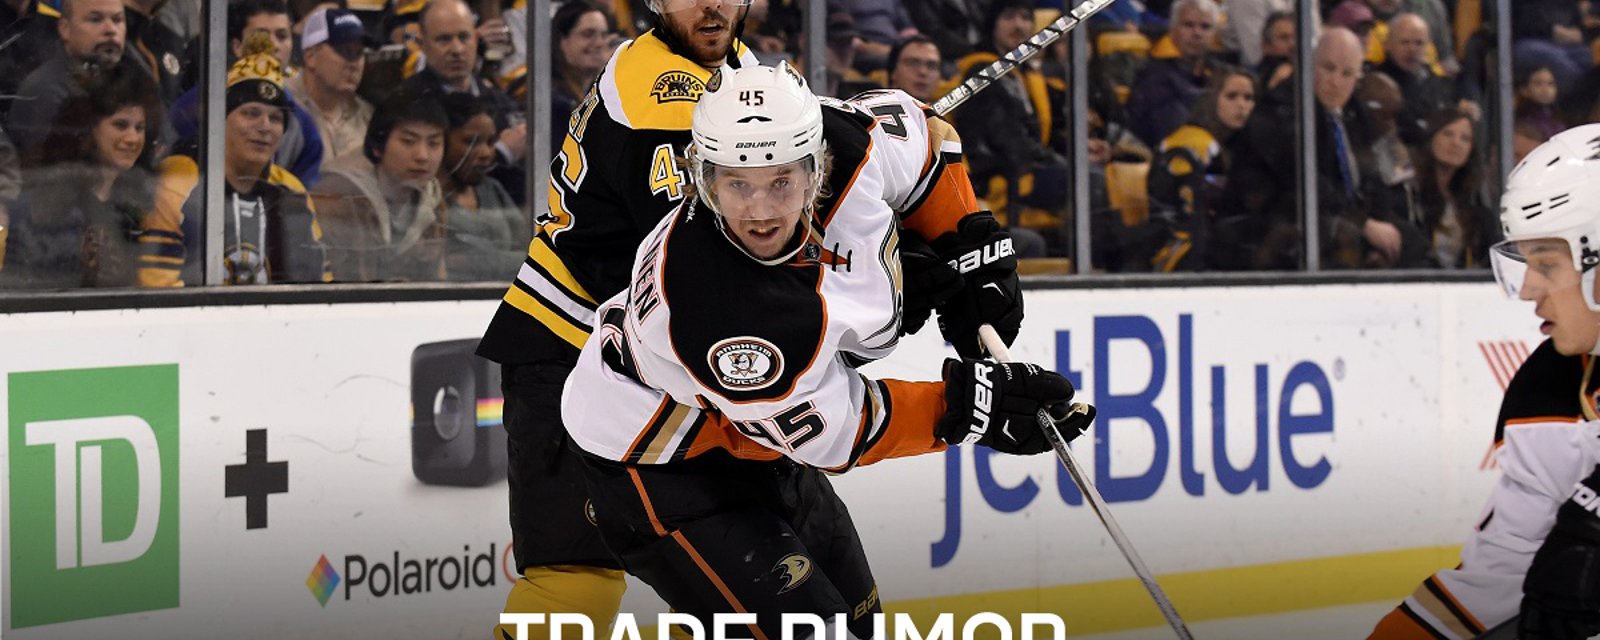 Breaking: Two huge names rumored in trade between Ducks and Bruins.